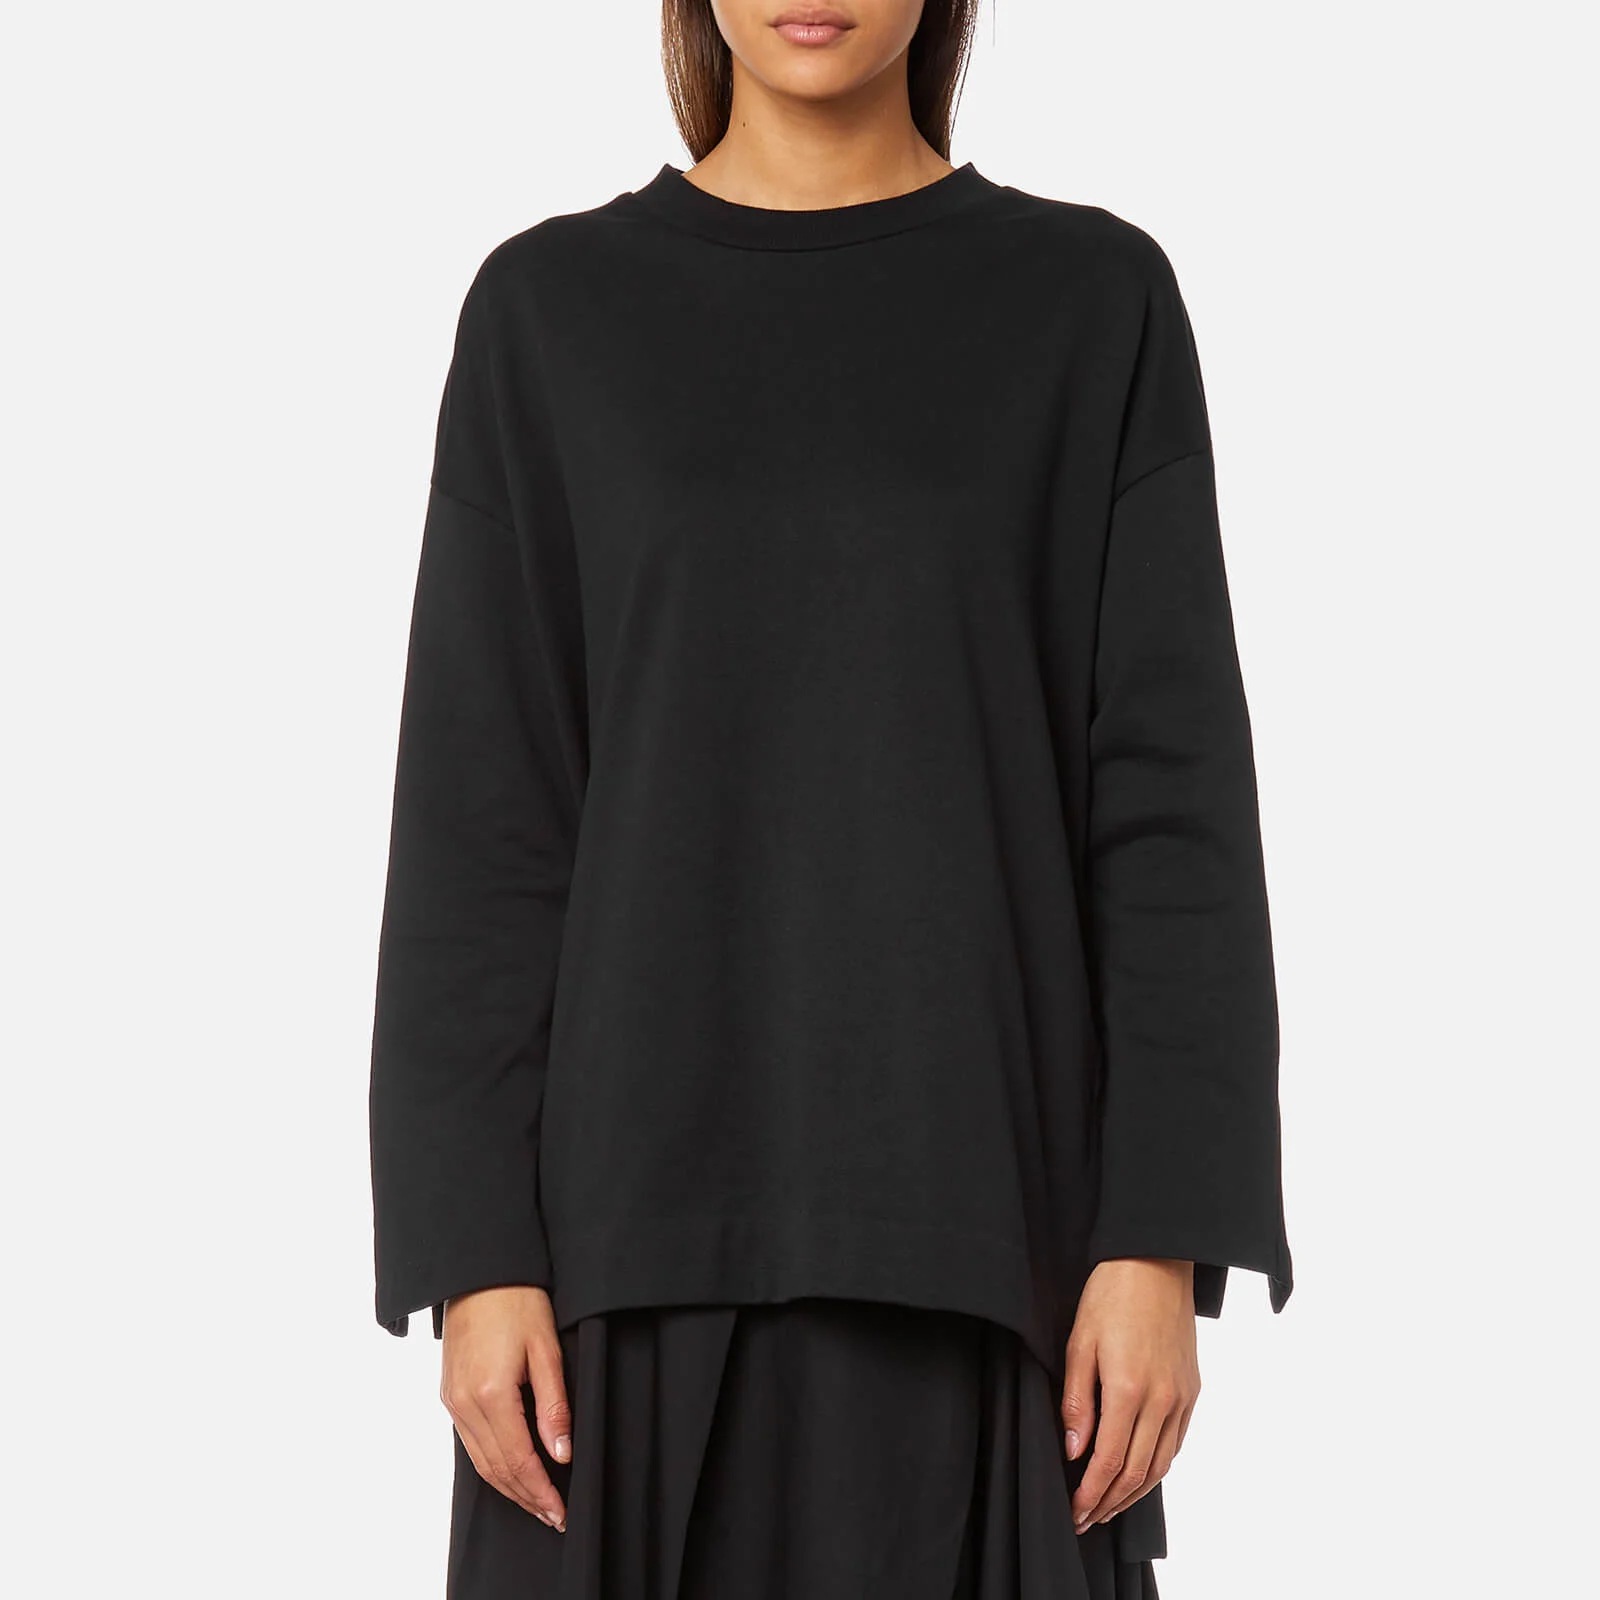 Y-3 Women's Bold Stripe Sweatshirt - Black Image 1